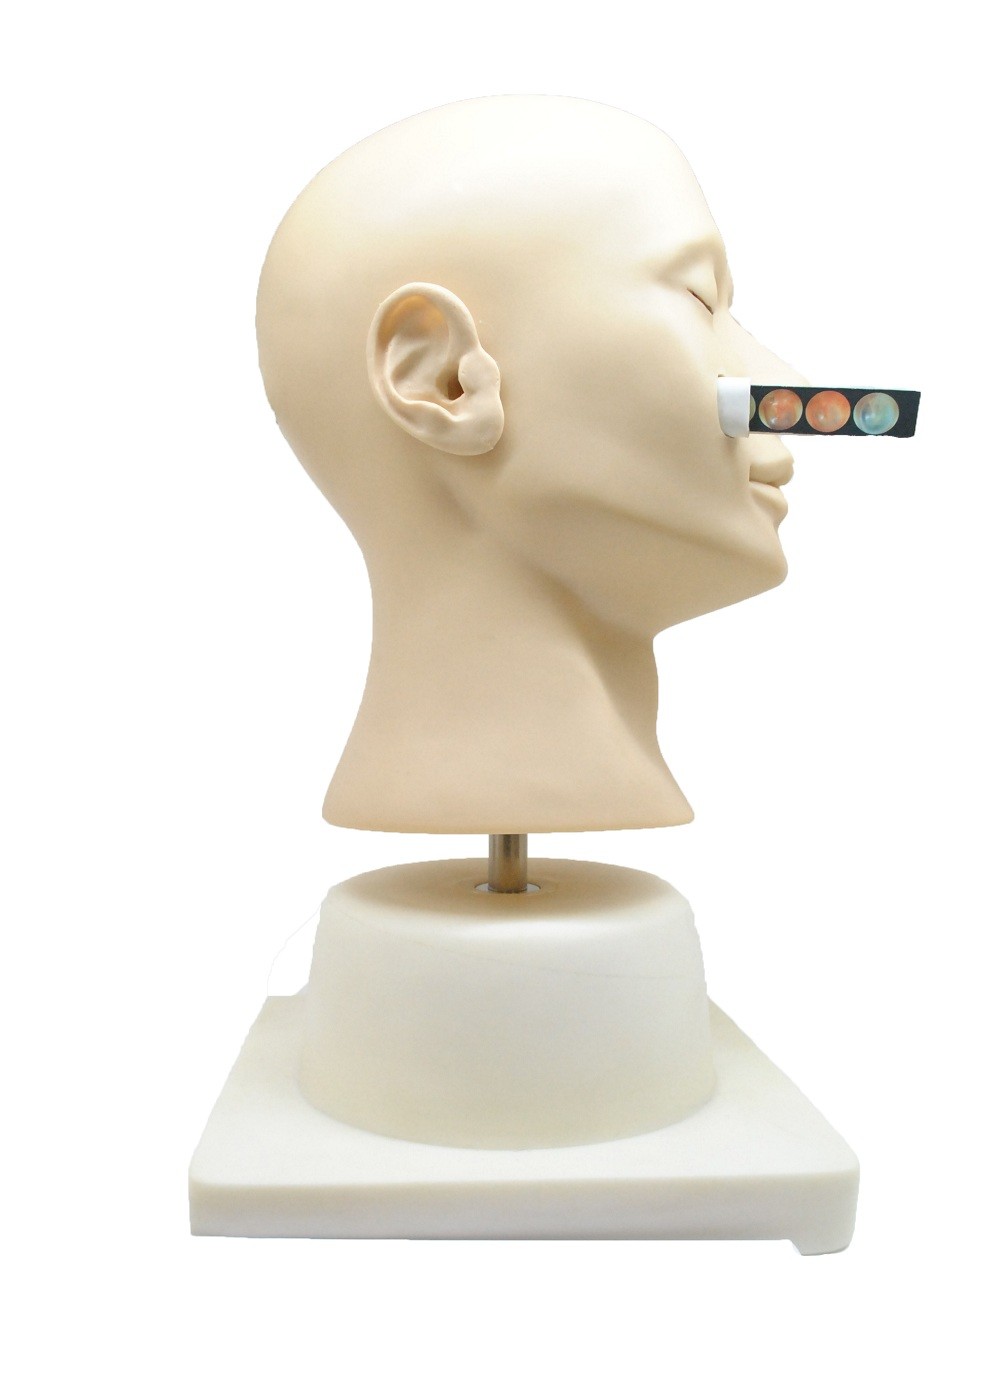 Boneca nasal do treinamento da hemorragia da simulação clínica avançada para a faculdade, hospital